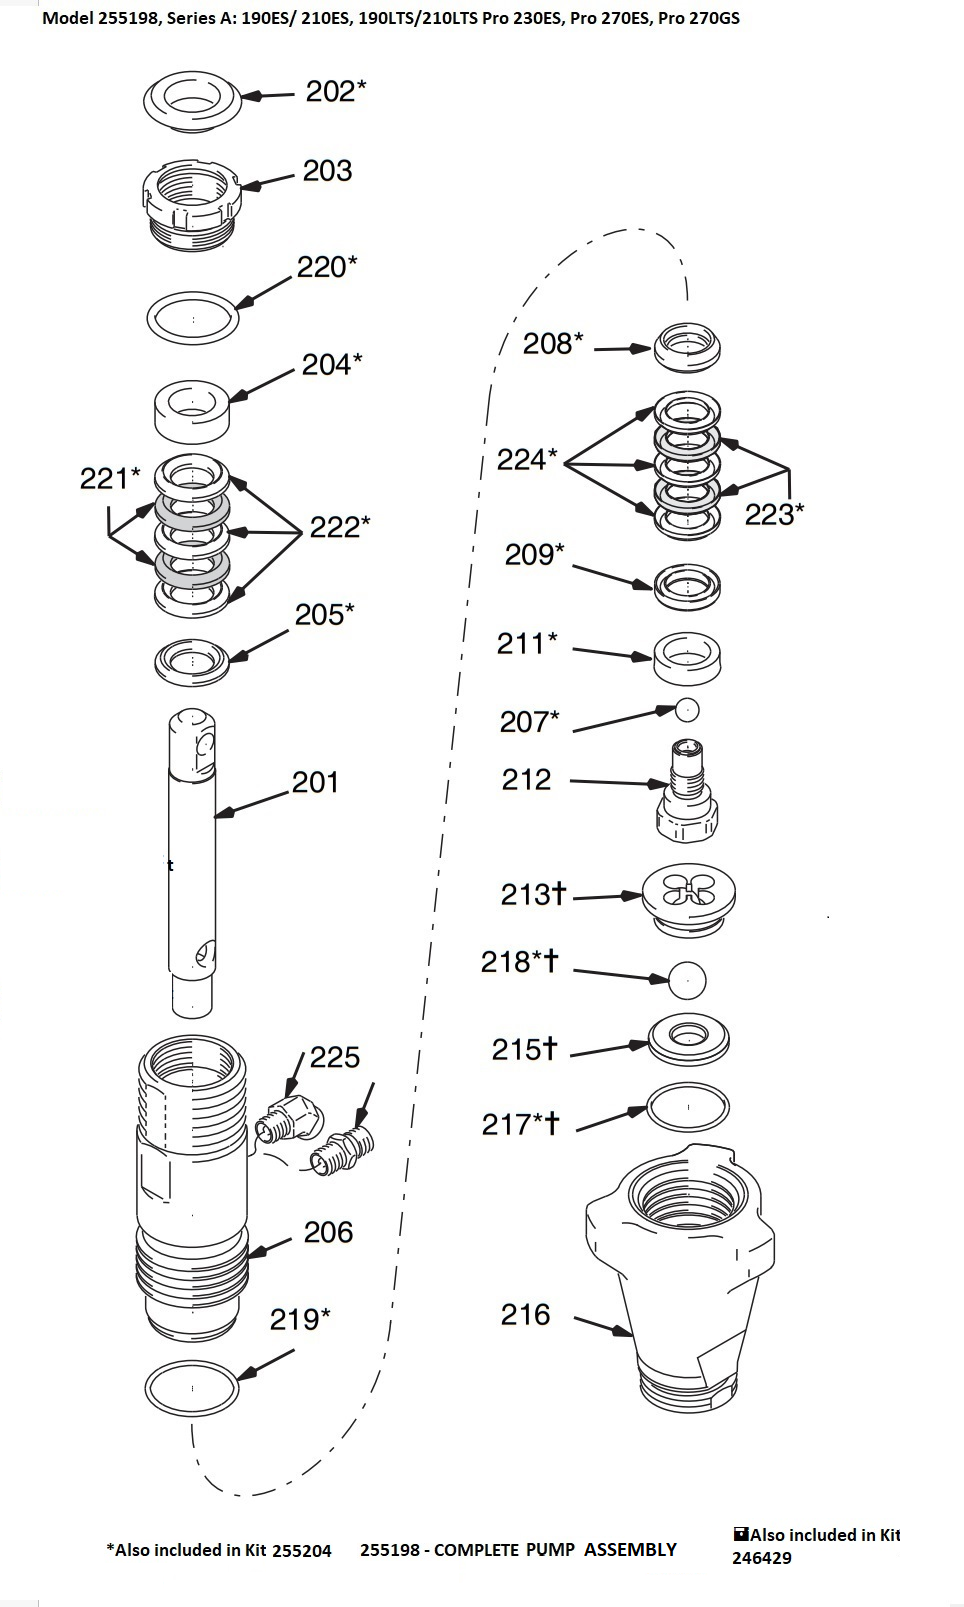 Graco 190LTS Stand Pump 255198 Parts (Model 257418) Part 1